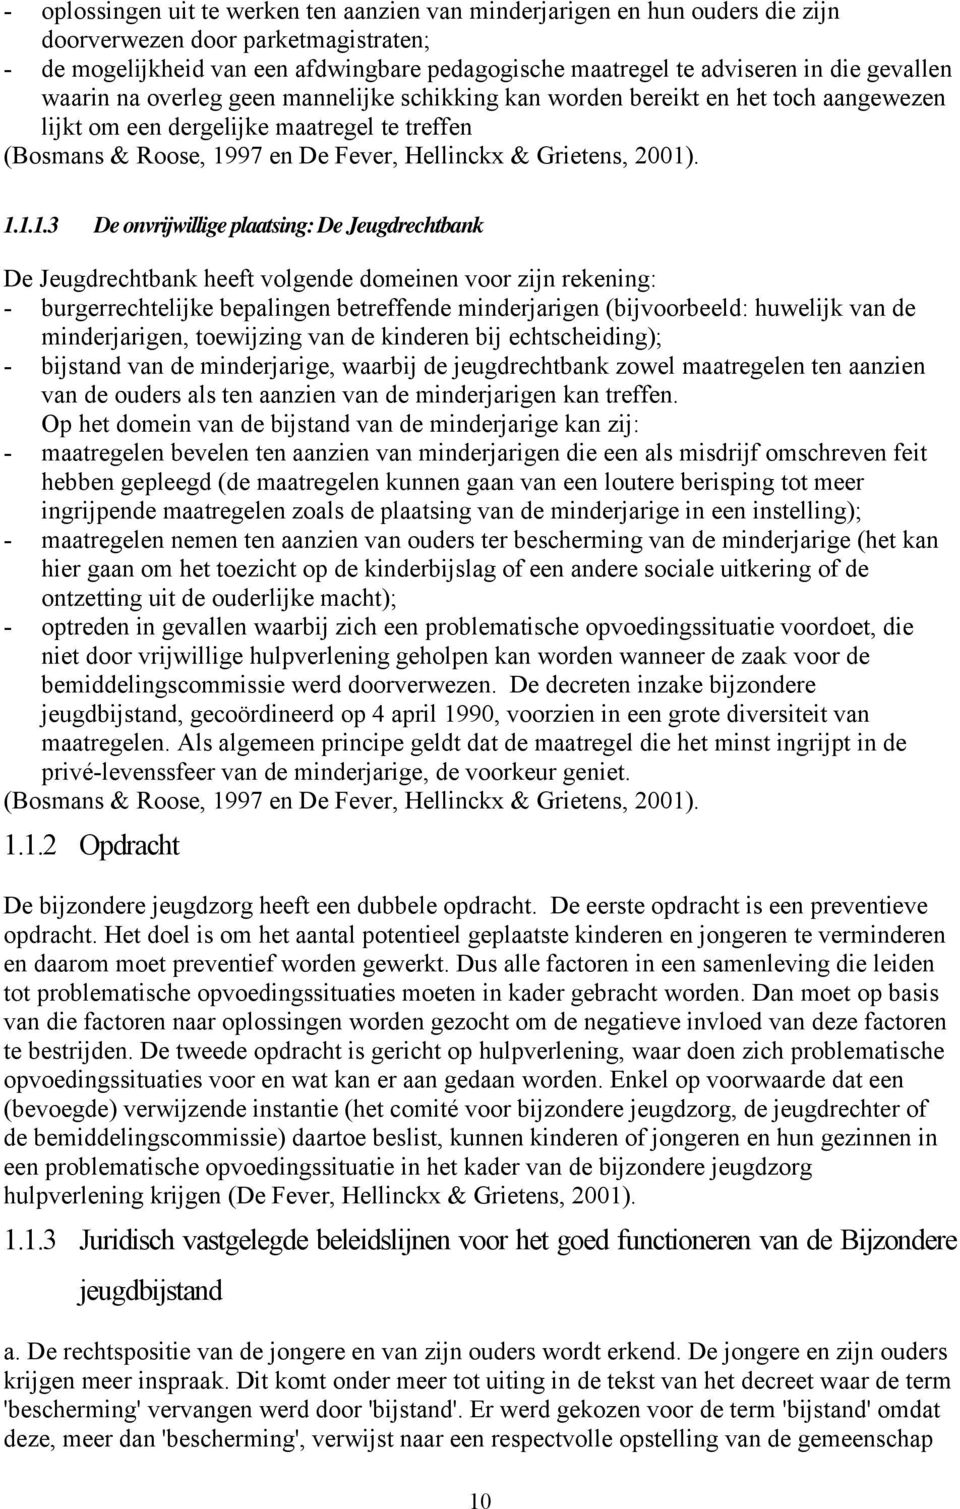 2001). 1.1.1.3 De onvrijwillige plaatsing: De Jeugdrechtbank De Jeugdrechtbank heeft volgende domeinen voor zijn rekening: - burgerrechtelijke bepalingen betreffende minderjarigen (bijvoorbeeld: